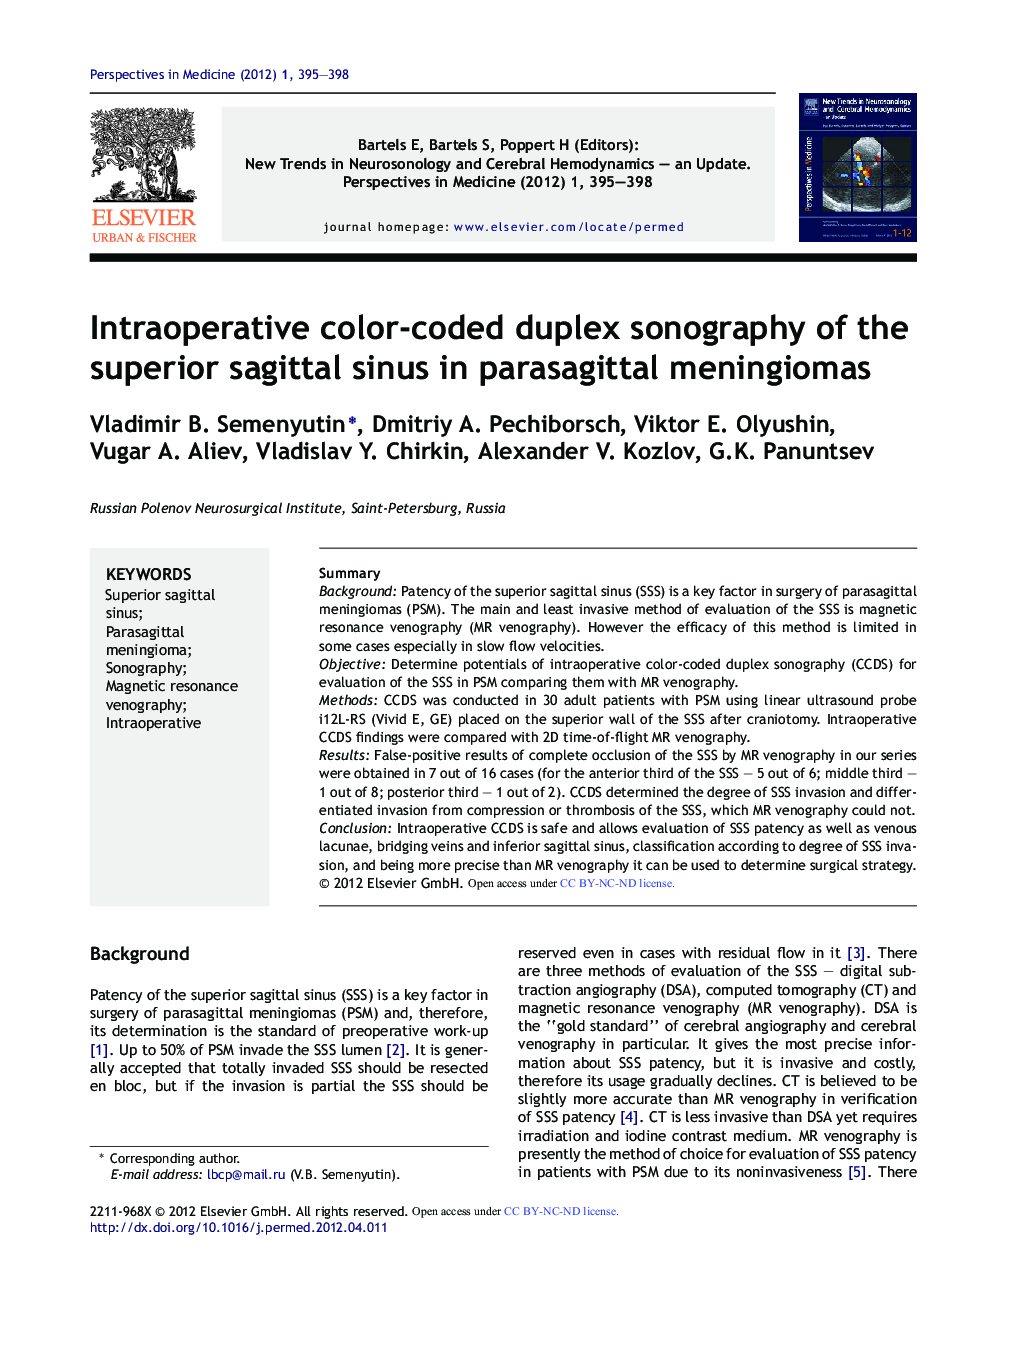 Intraoperative color-coded duplex sonography of the superior sagittal sinus in parasagittal meningiomas